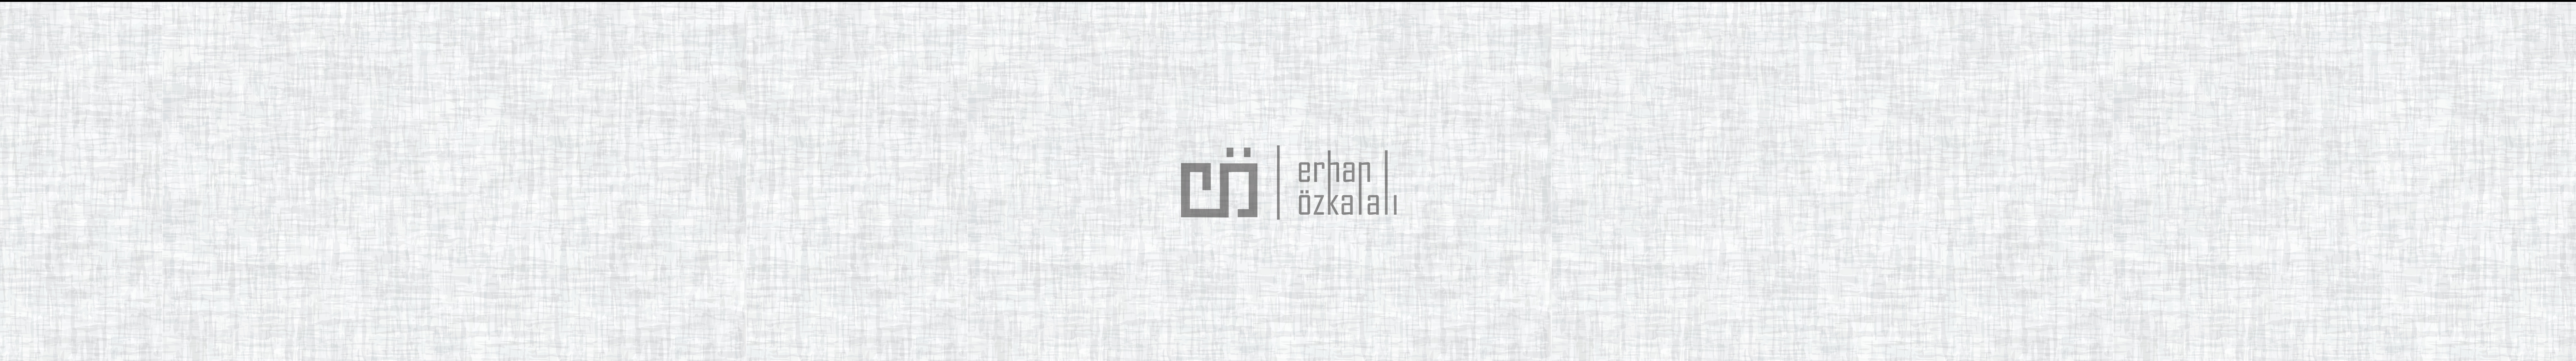 Erhan Özkalalı's profile banner